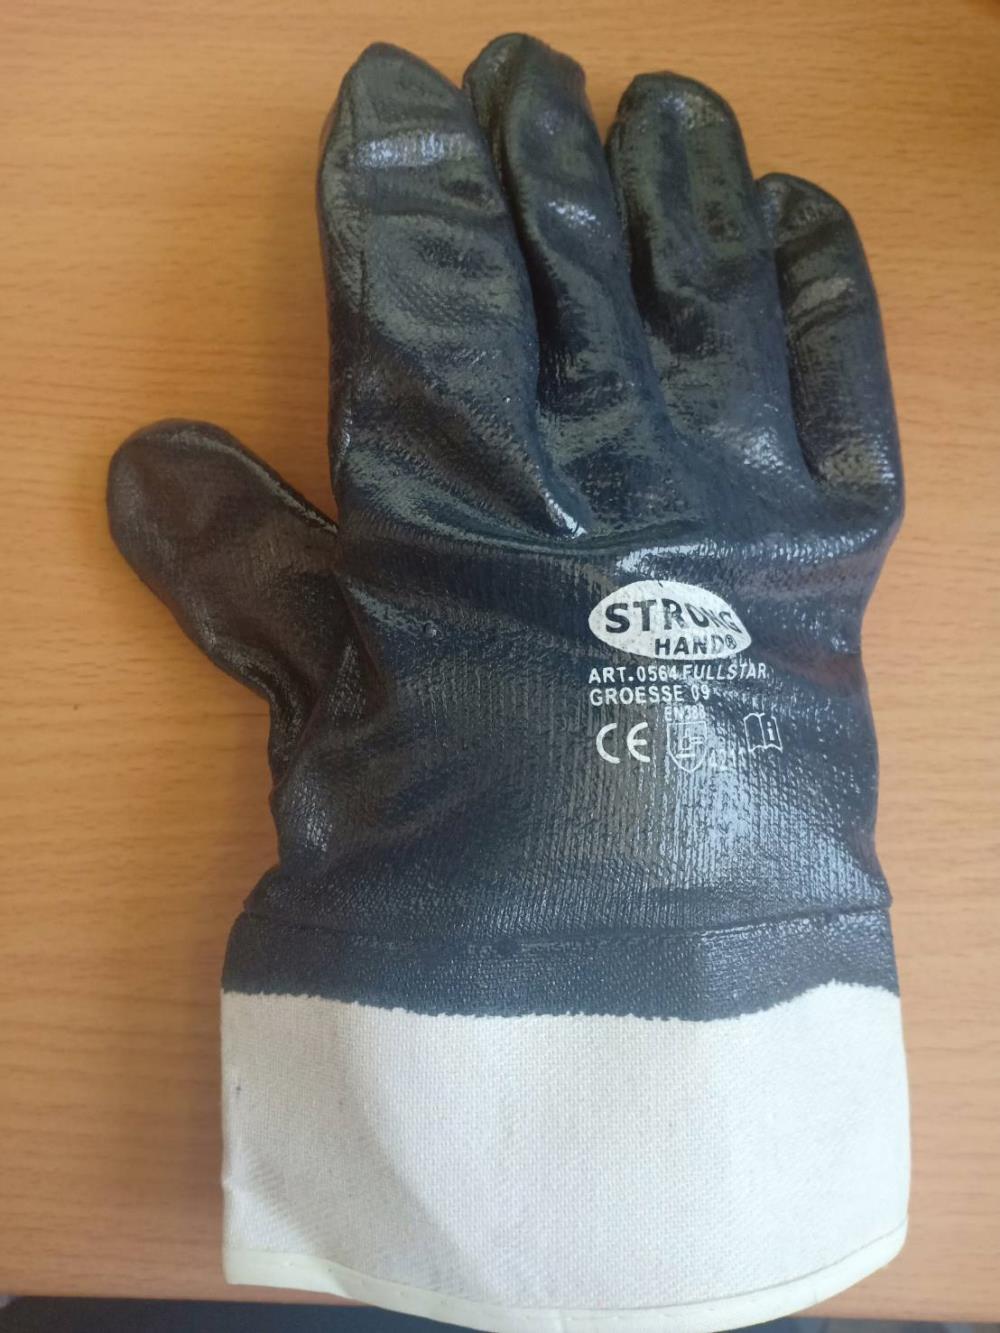 ถุงมือเคลือบยาง,ถุงมือเคลือบยาง,STRONG HAND,Plant and Facility Equipment/Safety Equipment/Gloves & Hand Protection